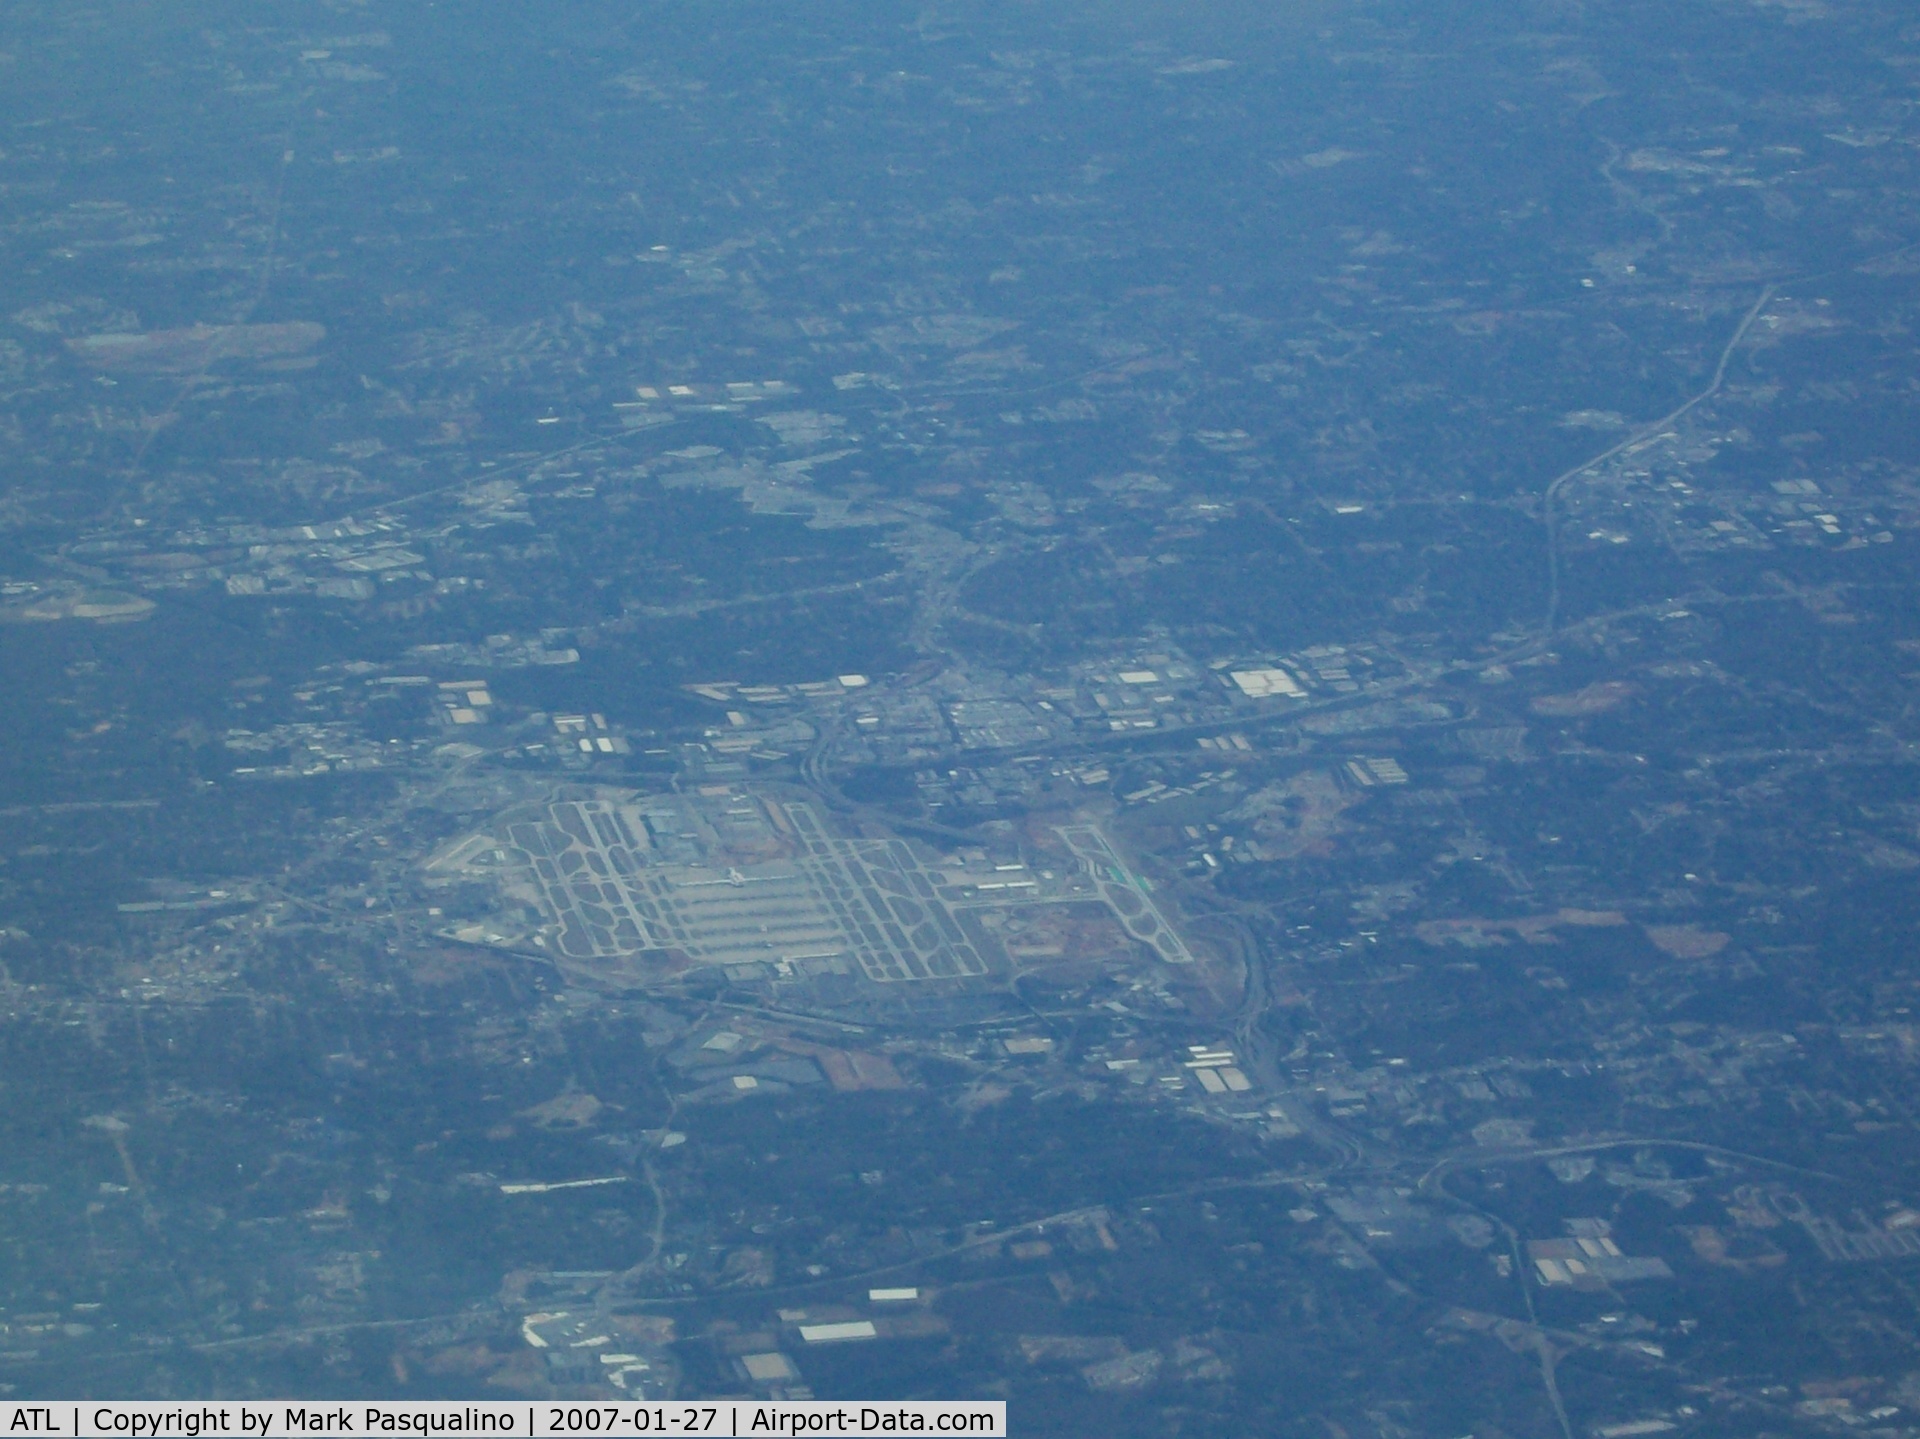 Hartsfield - Jackson Atlanta International Airport (ATL) - Atlanta Hartsfield taken from FL 410